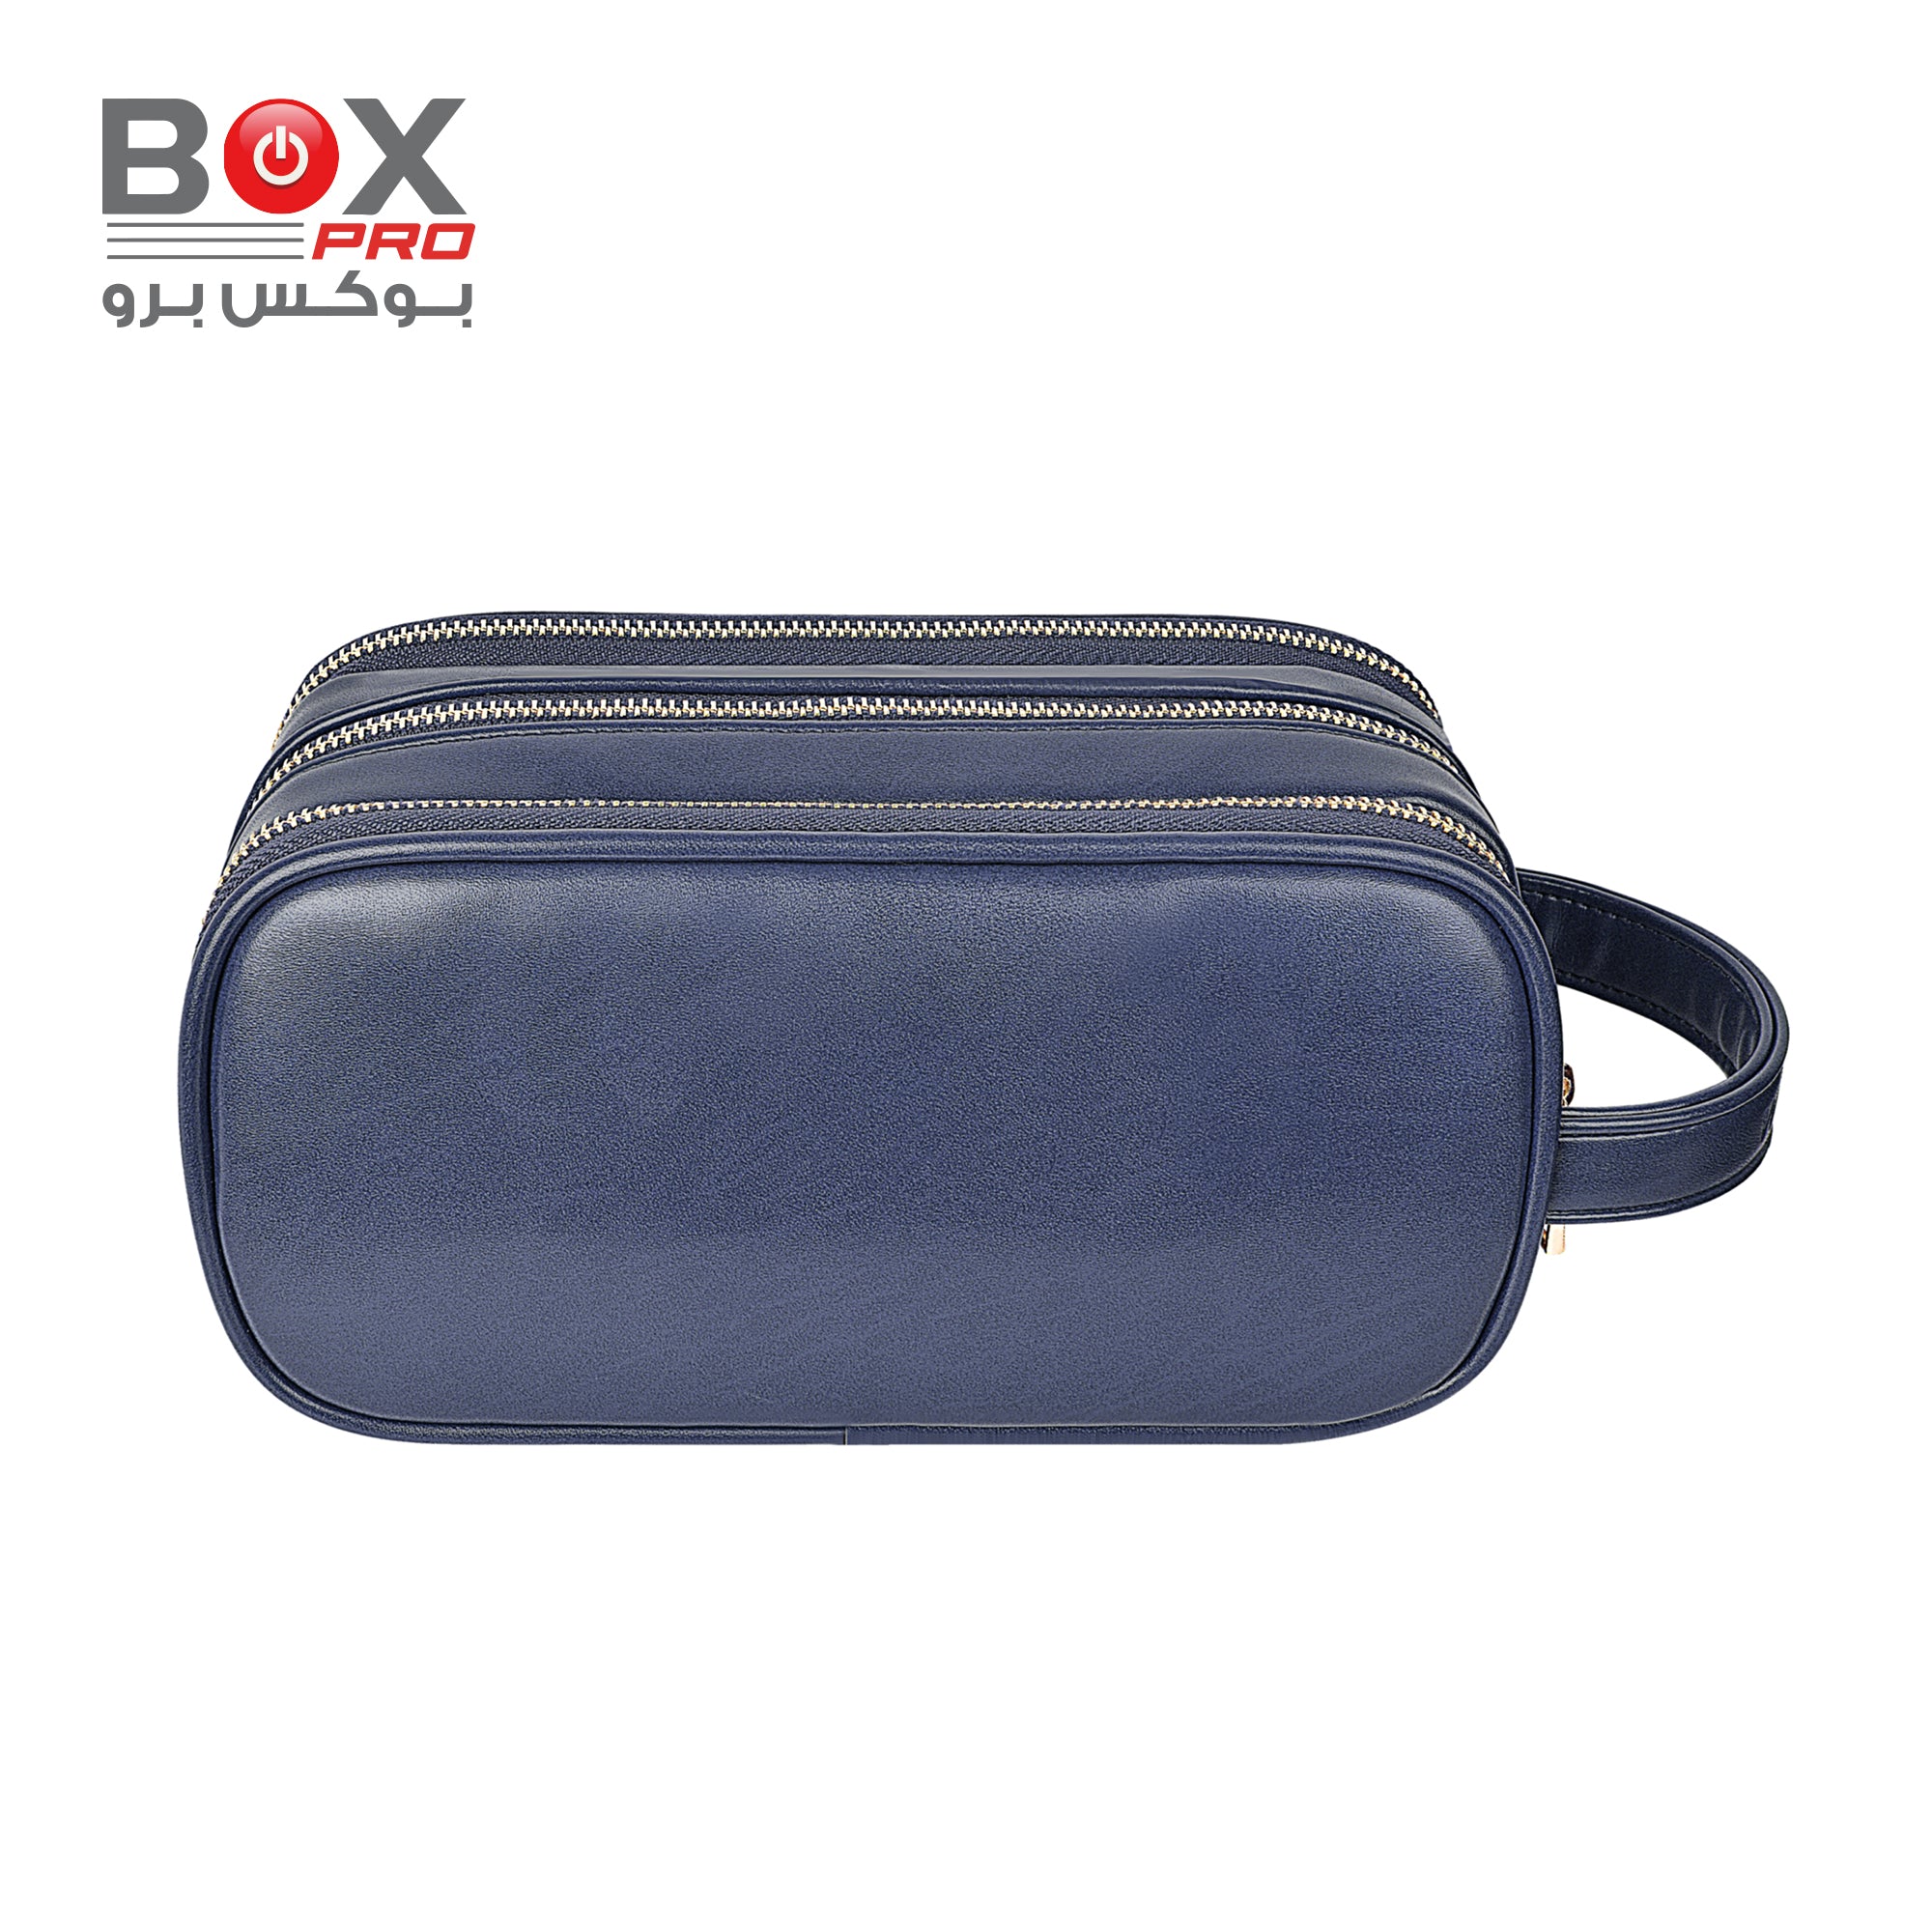 بوكس برو – Salem Lux حقيبة سفر ضد السرقة بثلاثة جيوب – أزرق